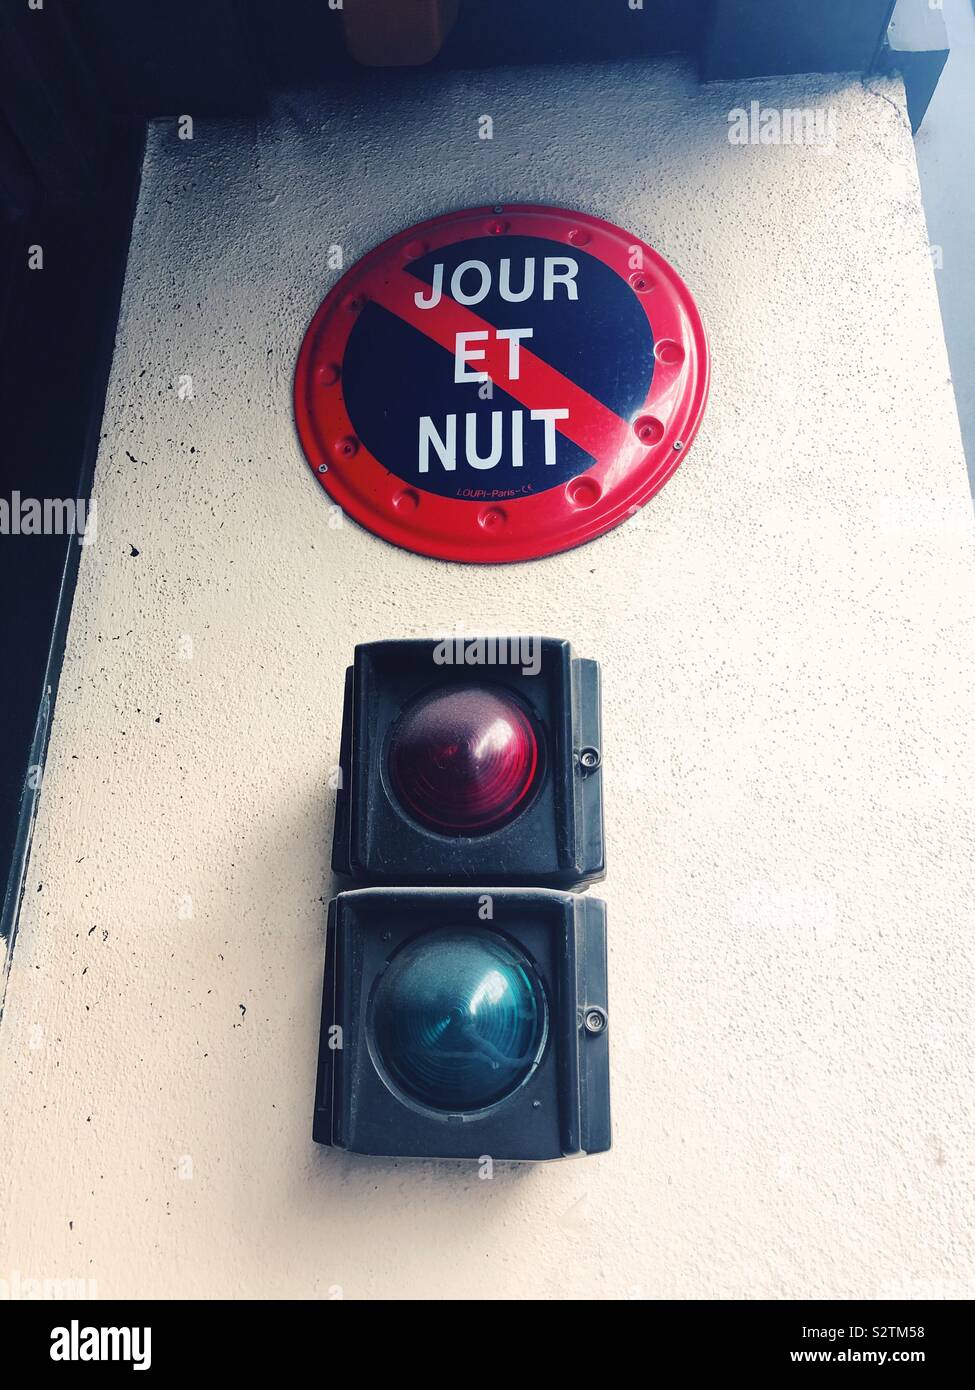 Jour et Nuit, No Parking sign, Paris, France Stock Photo